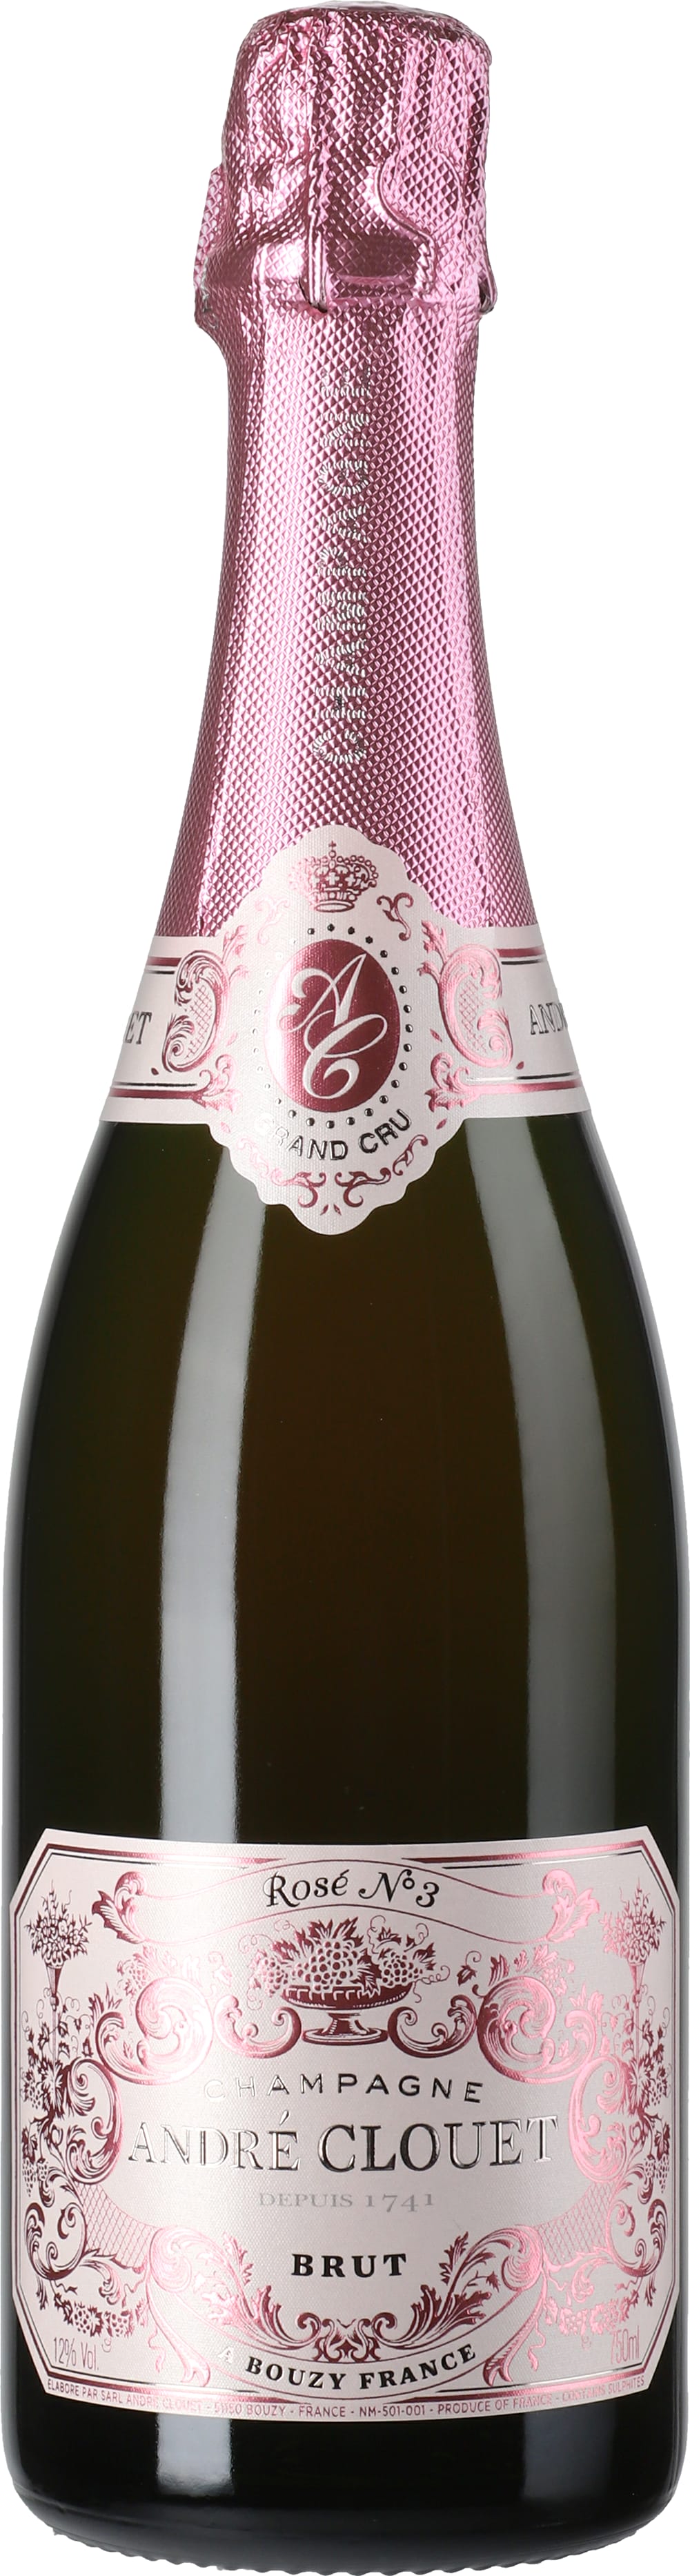 Wine Vins Andre Clouet Champagne Nº 3 Rosé